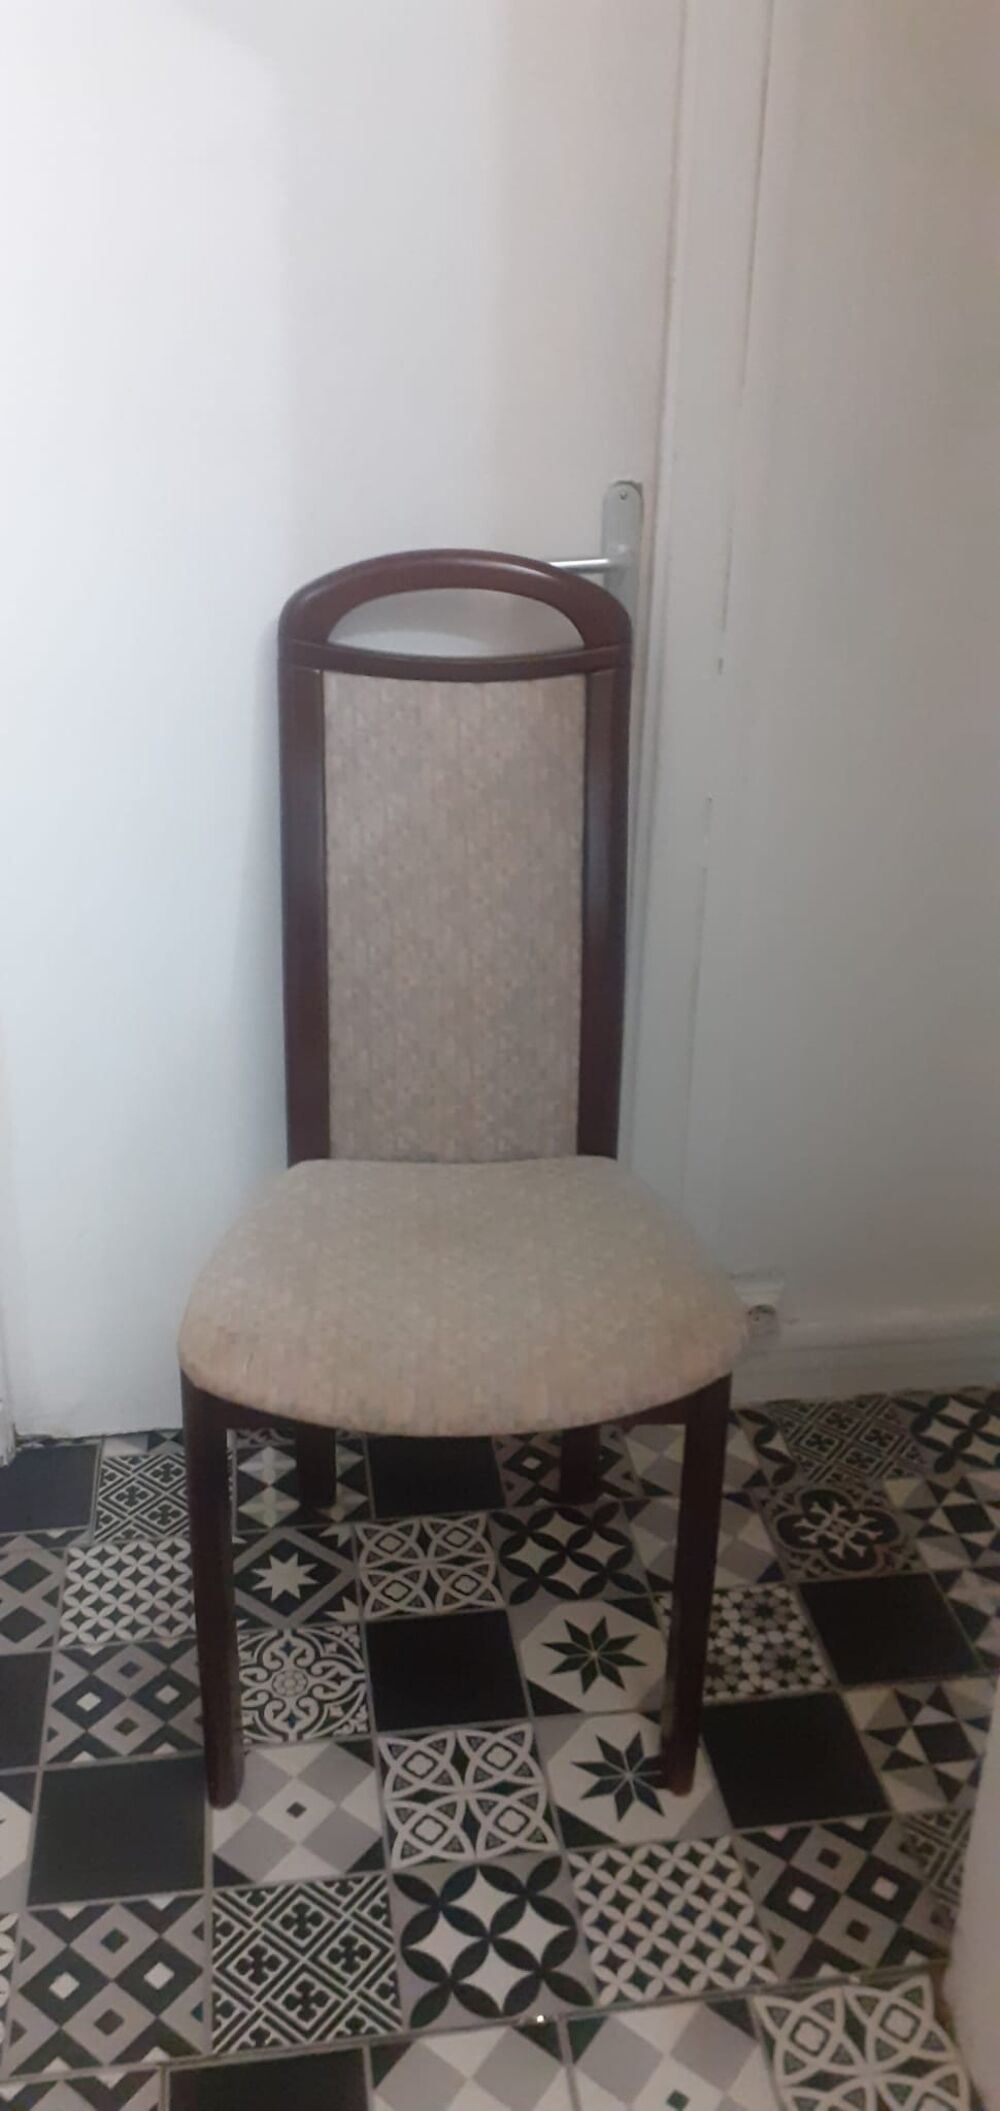 Lot de 5 chaises Maroquinerie